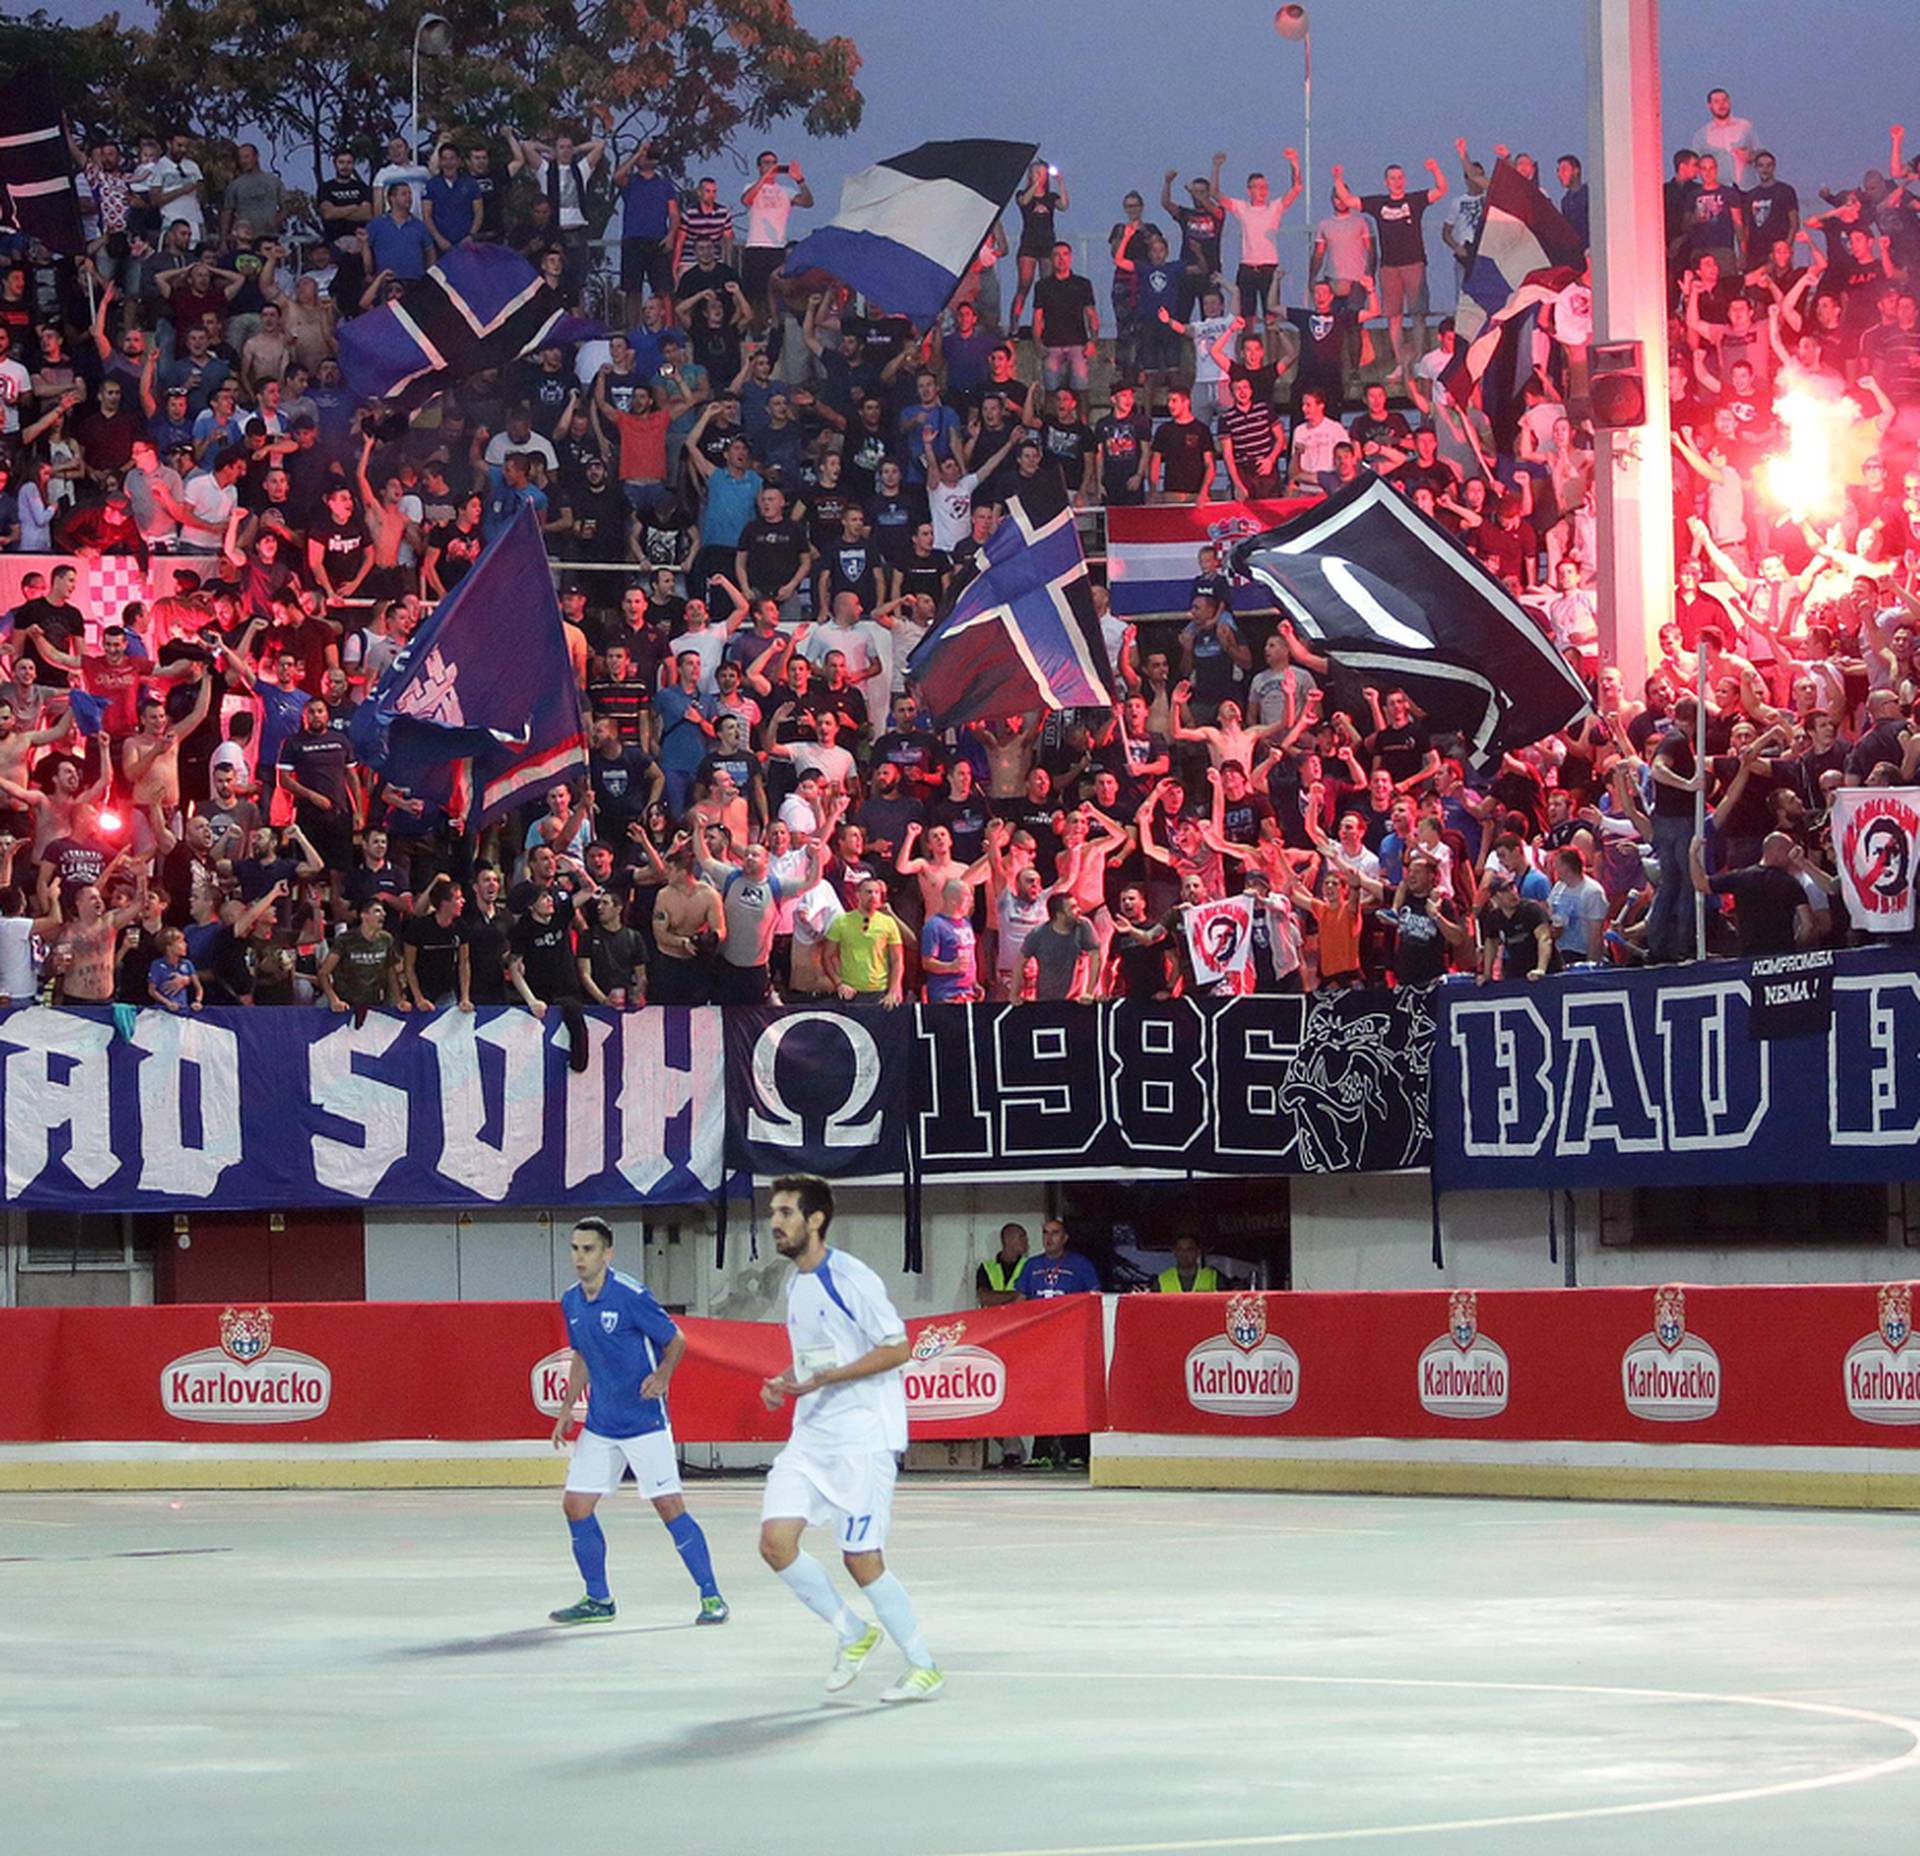 'Dinamo, to smo mi': Ako klub ne prihvati zahtjeve, ide - sud